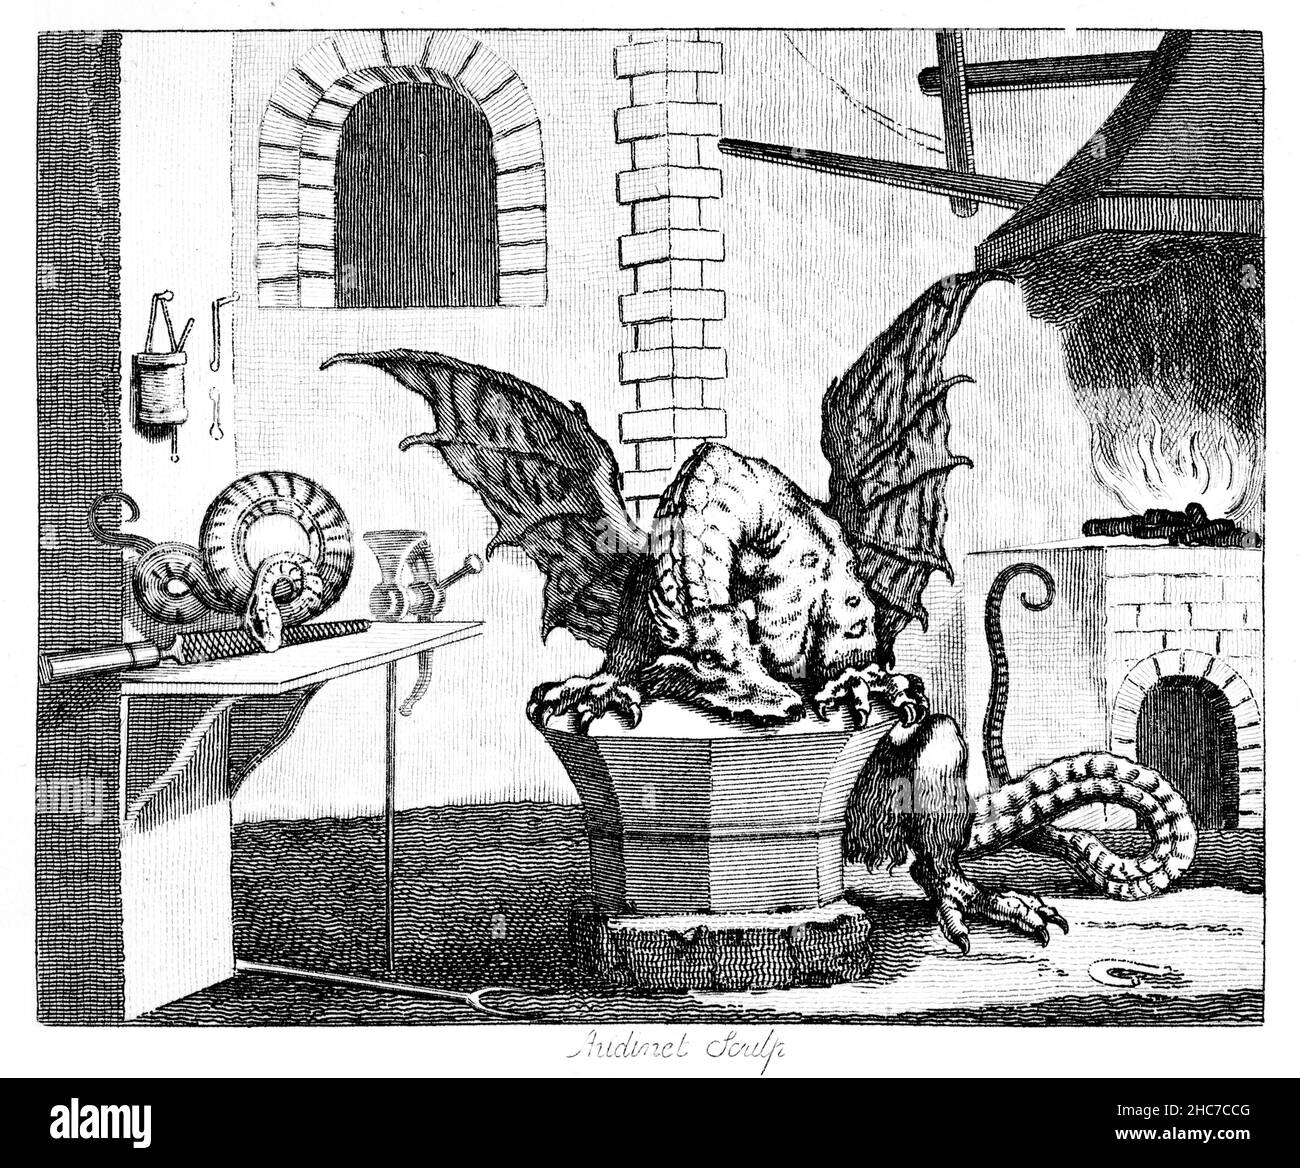 Illustration gravée du Viper et du fichier, avec la morale, il est inutile d’attaquer l’insensé de la première édition de 1793 de l’Aesop de Stockdale Banque D'Images